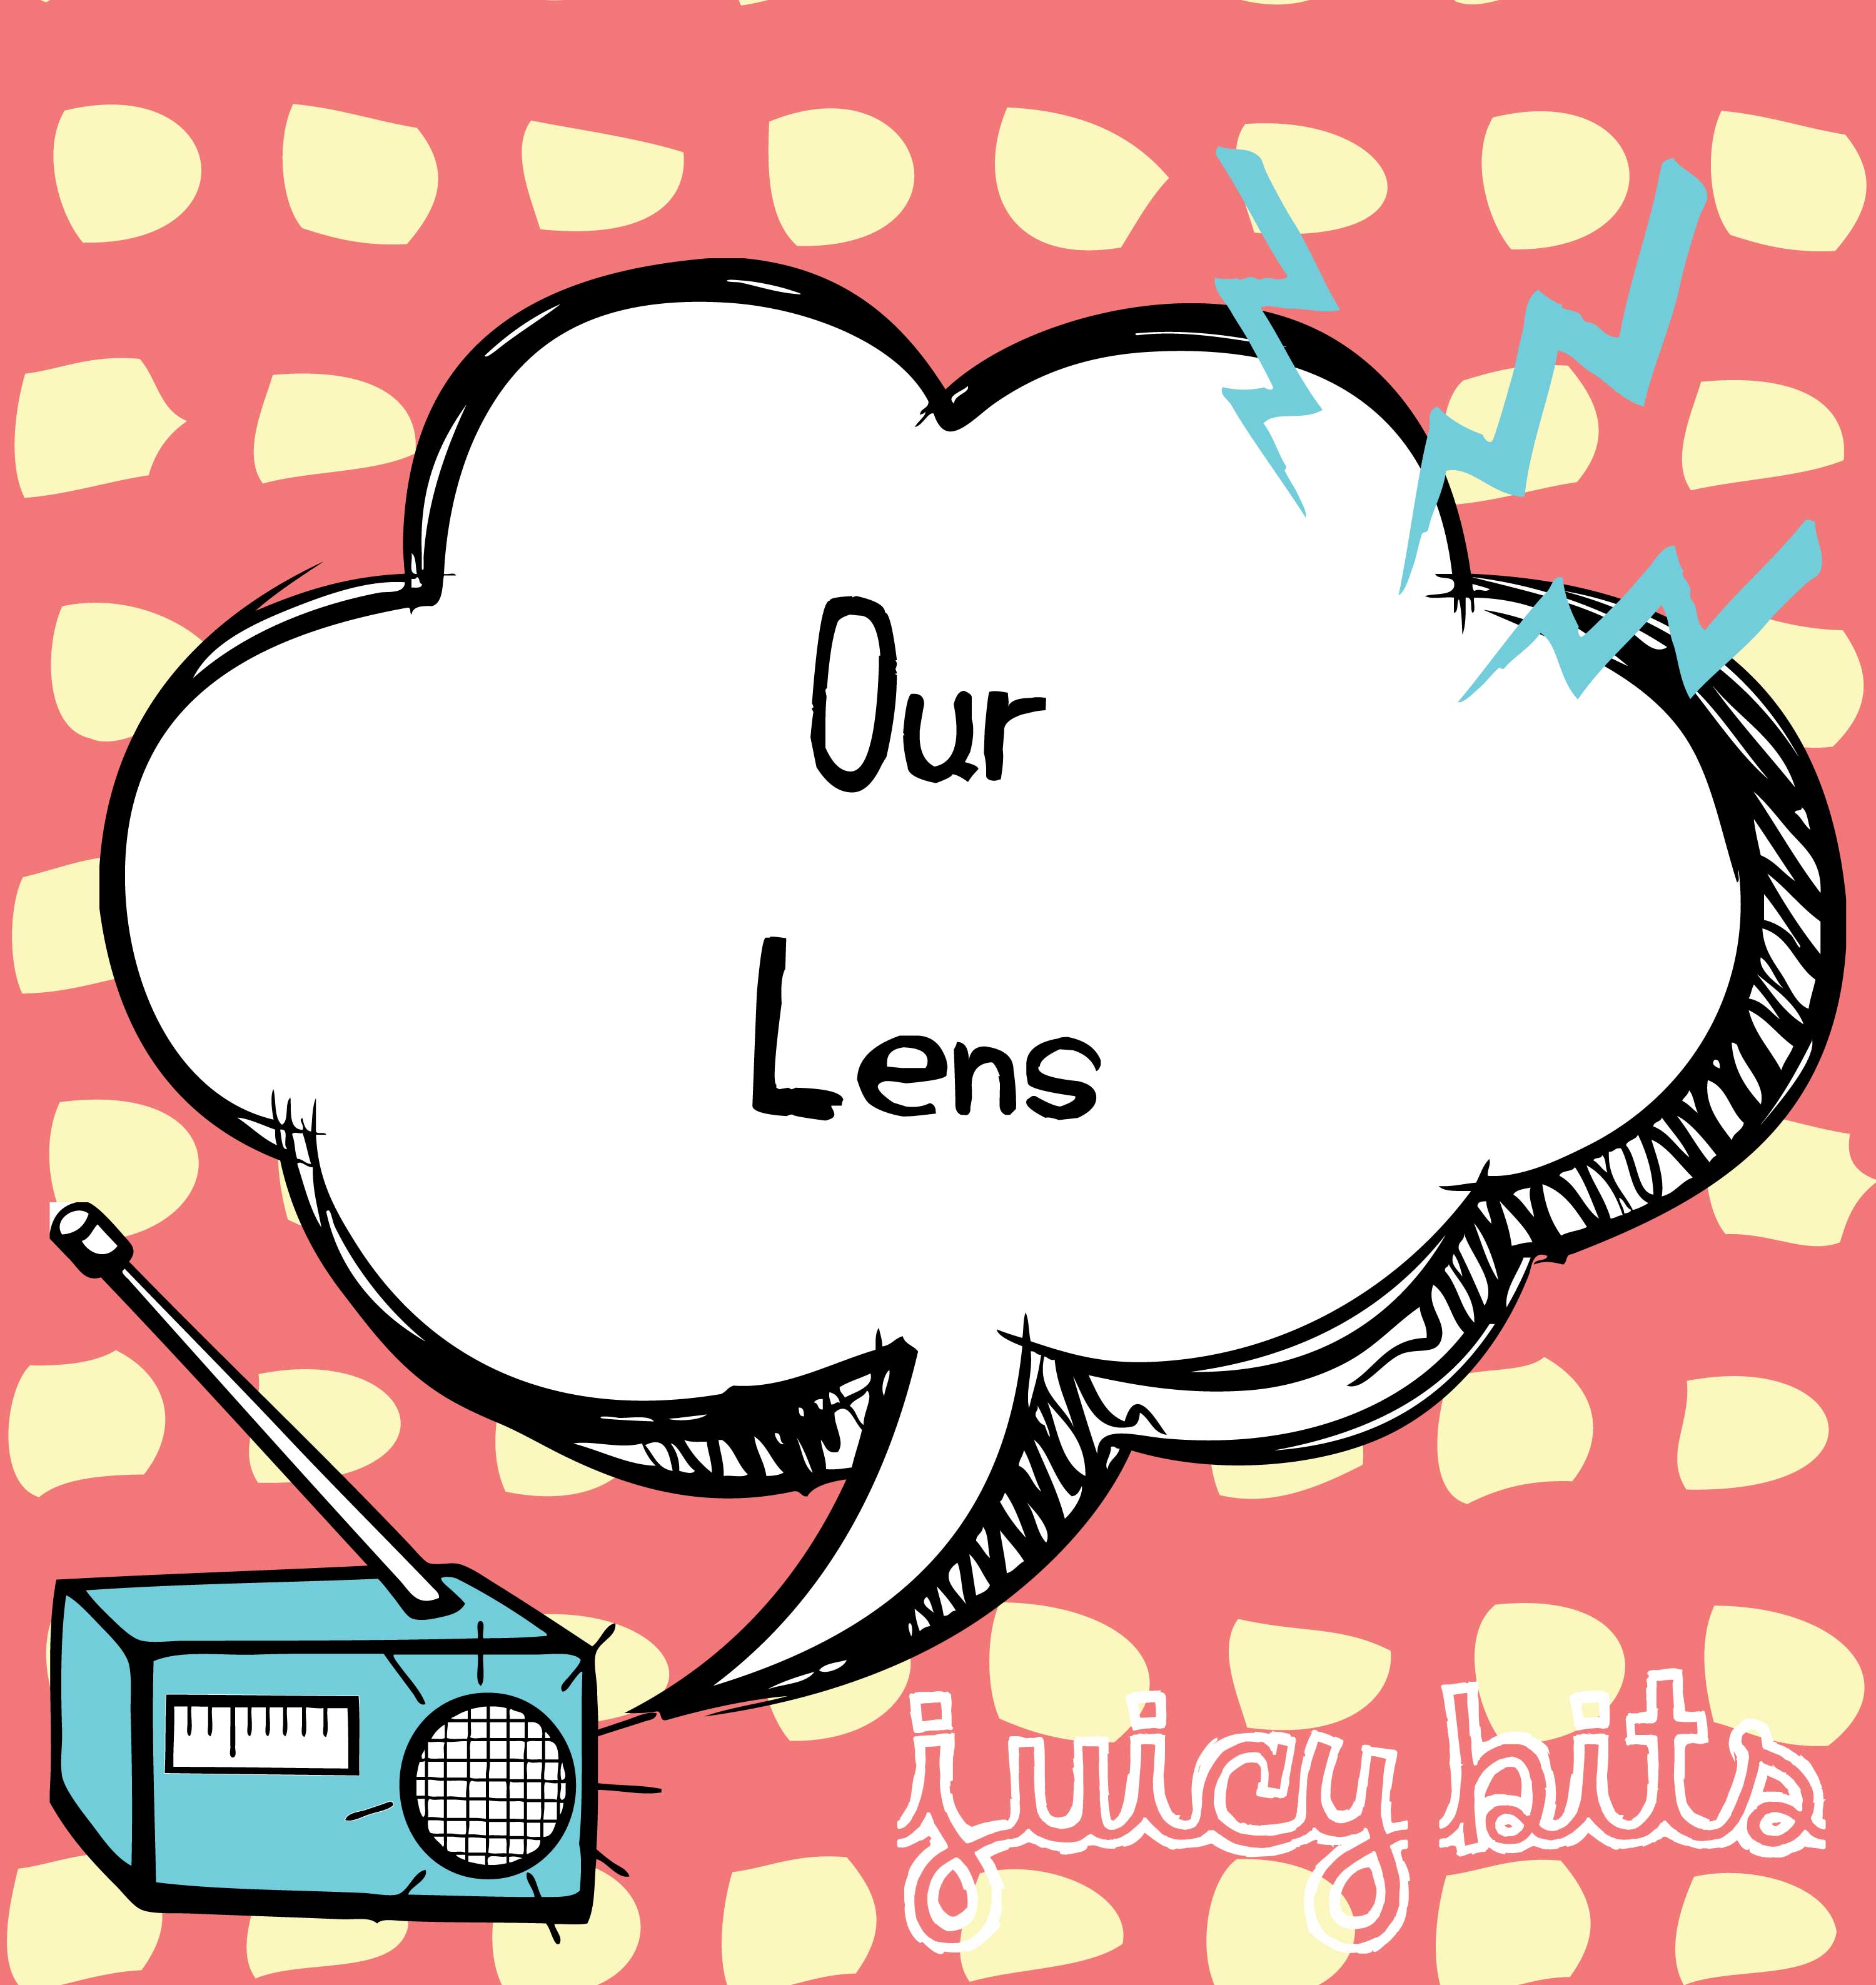 Juicy Bits: Our Lens